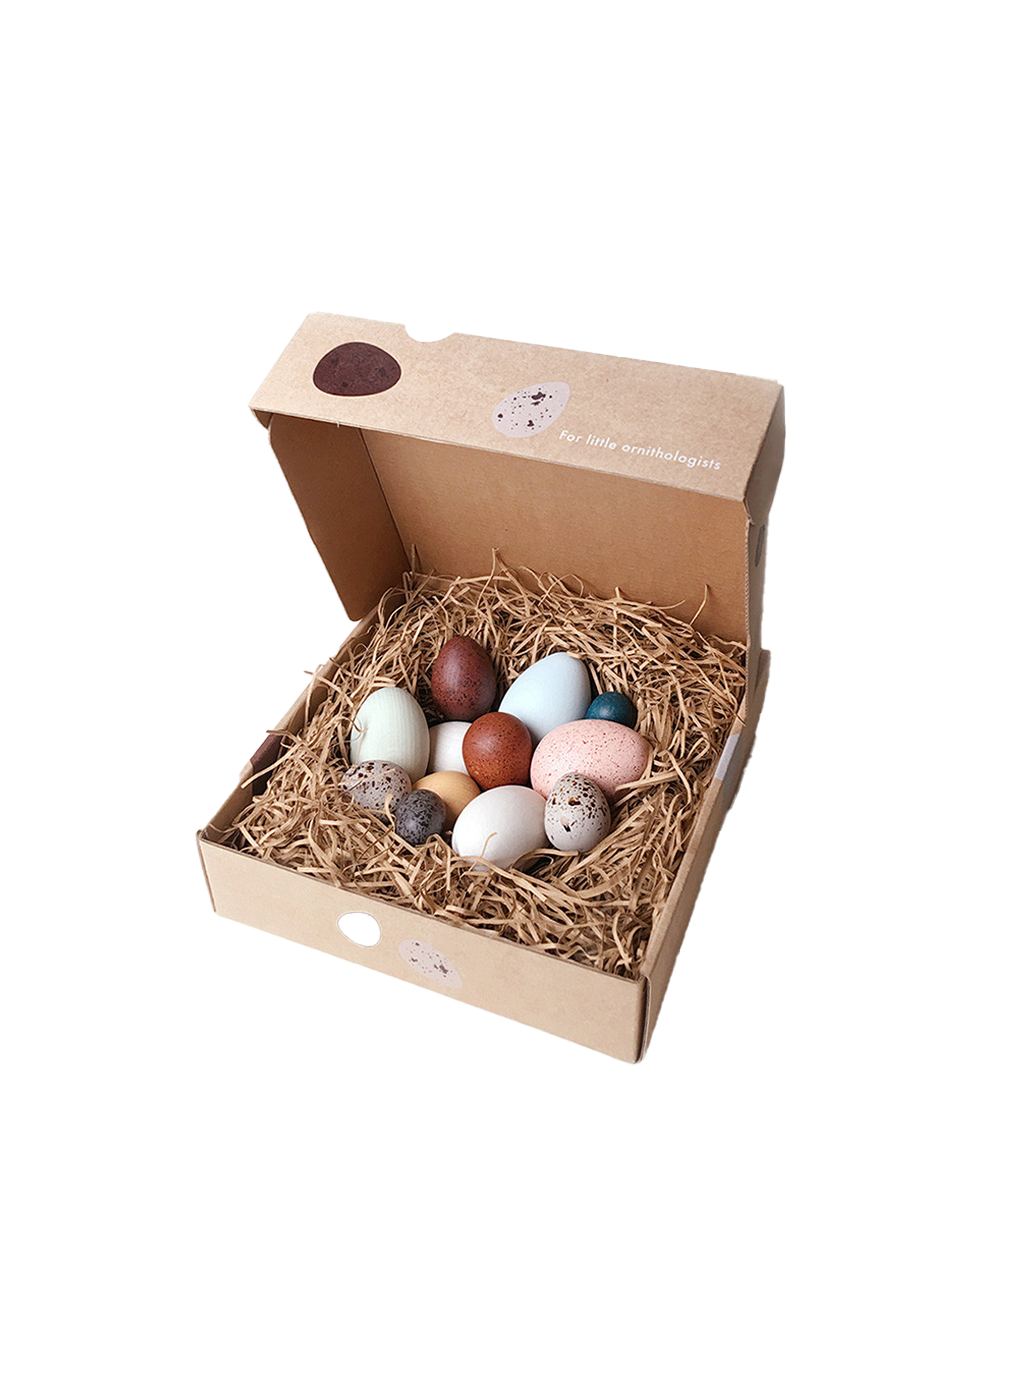 uova di legno in una scatola Una dozzina di uova di uccelli